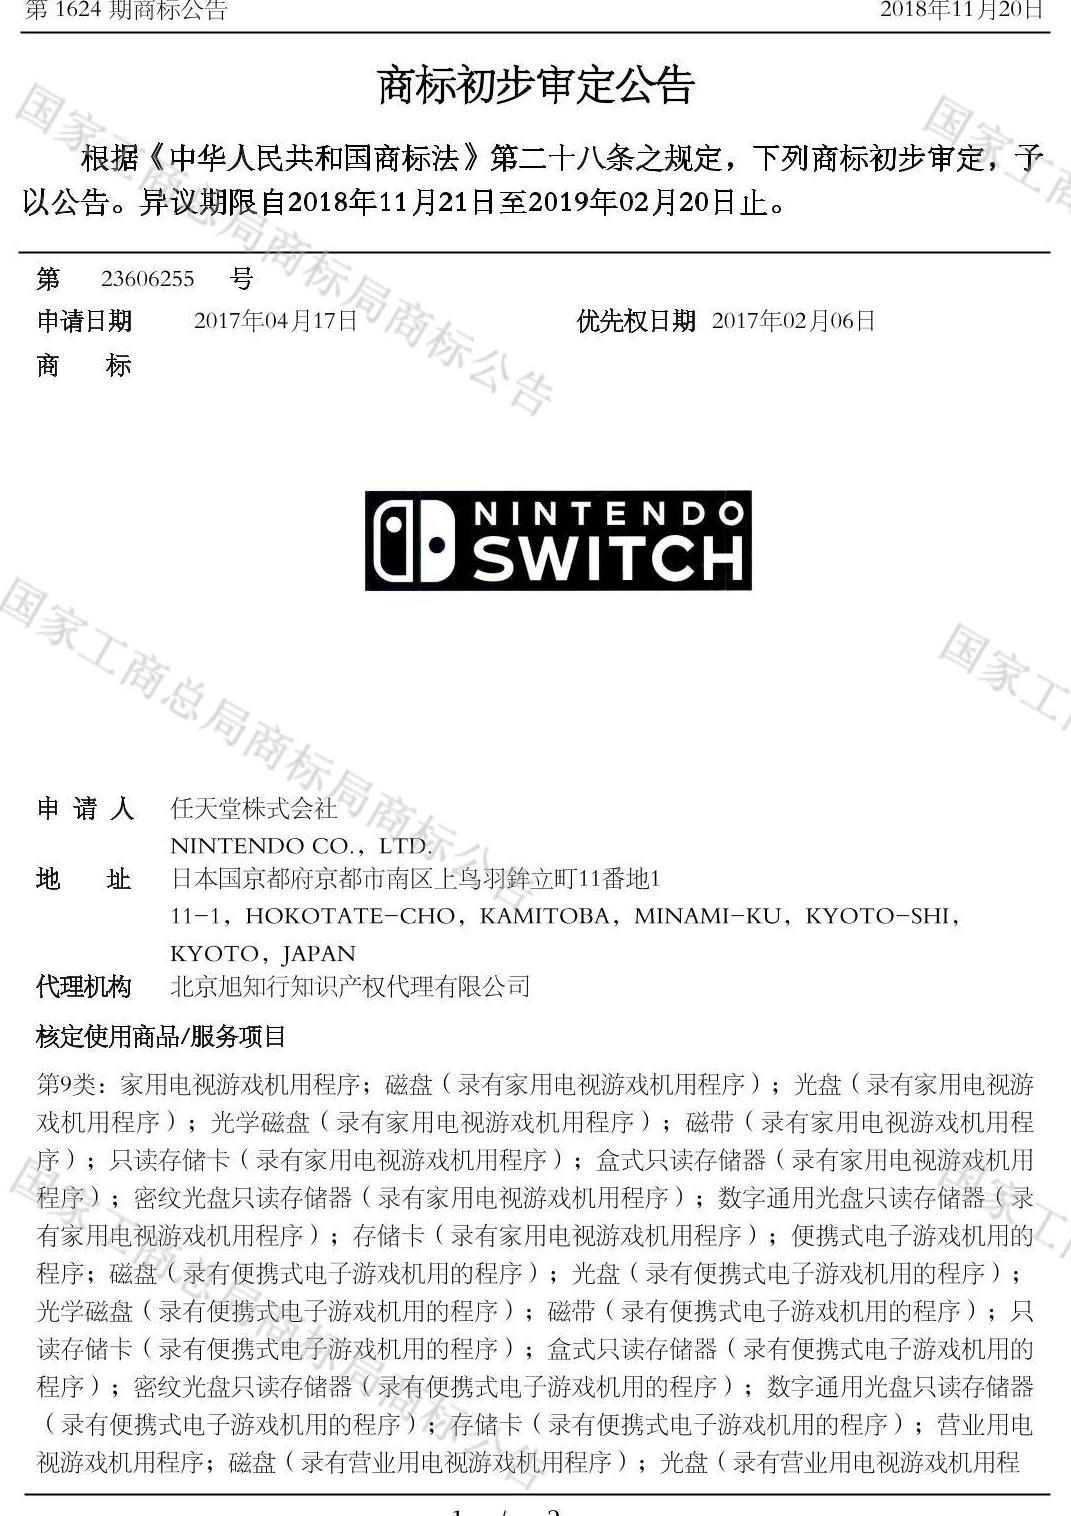 中国大陆Nintendo Switch注册商标进入初步审